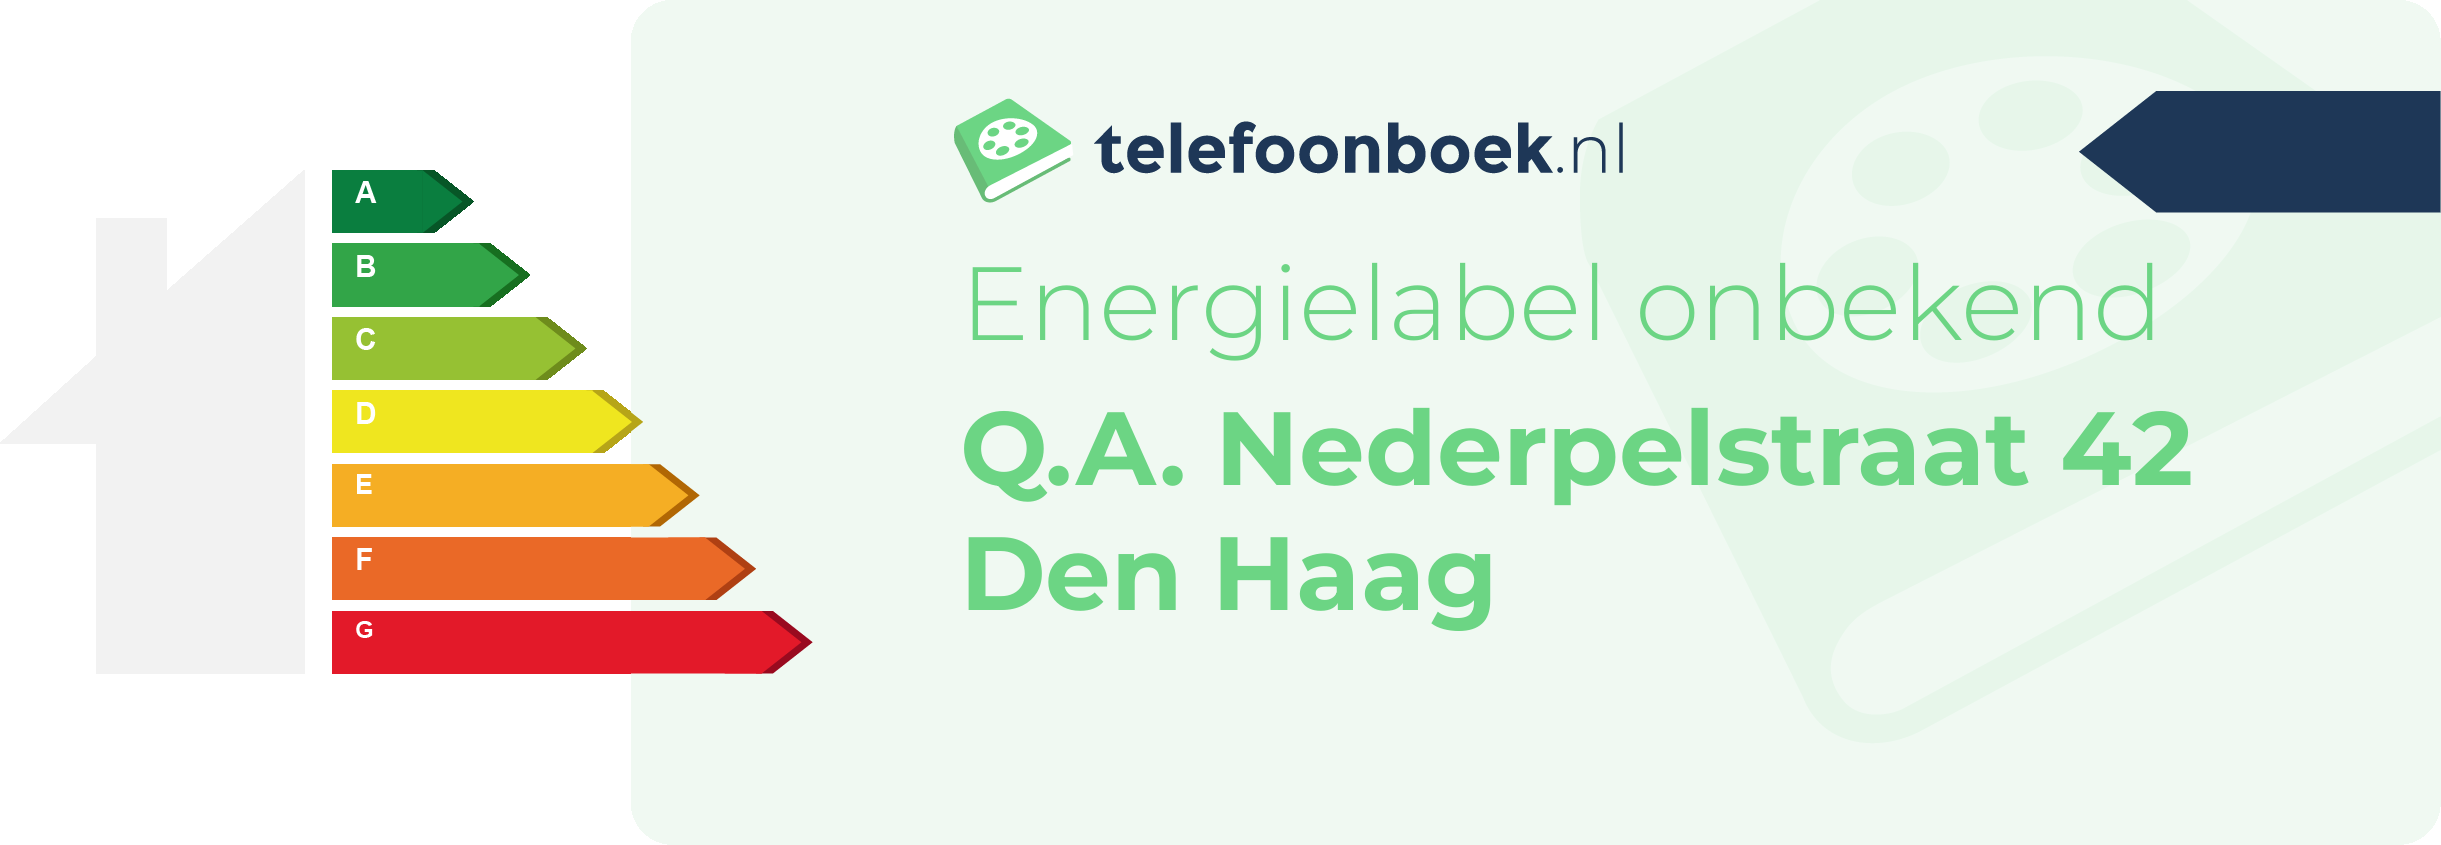 Energielabel Q.A. Nederpelstraat 42 Den Haag